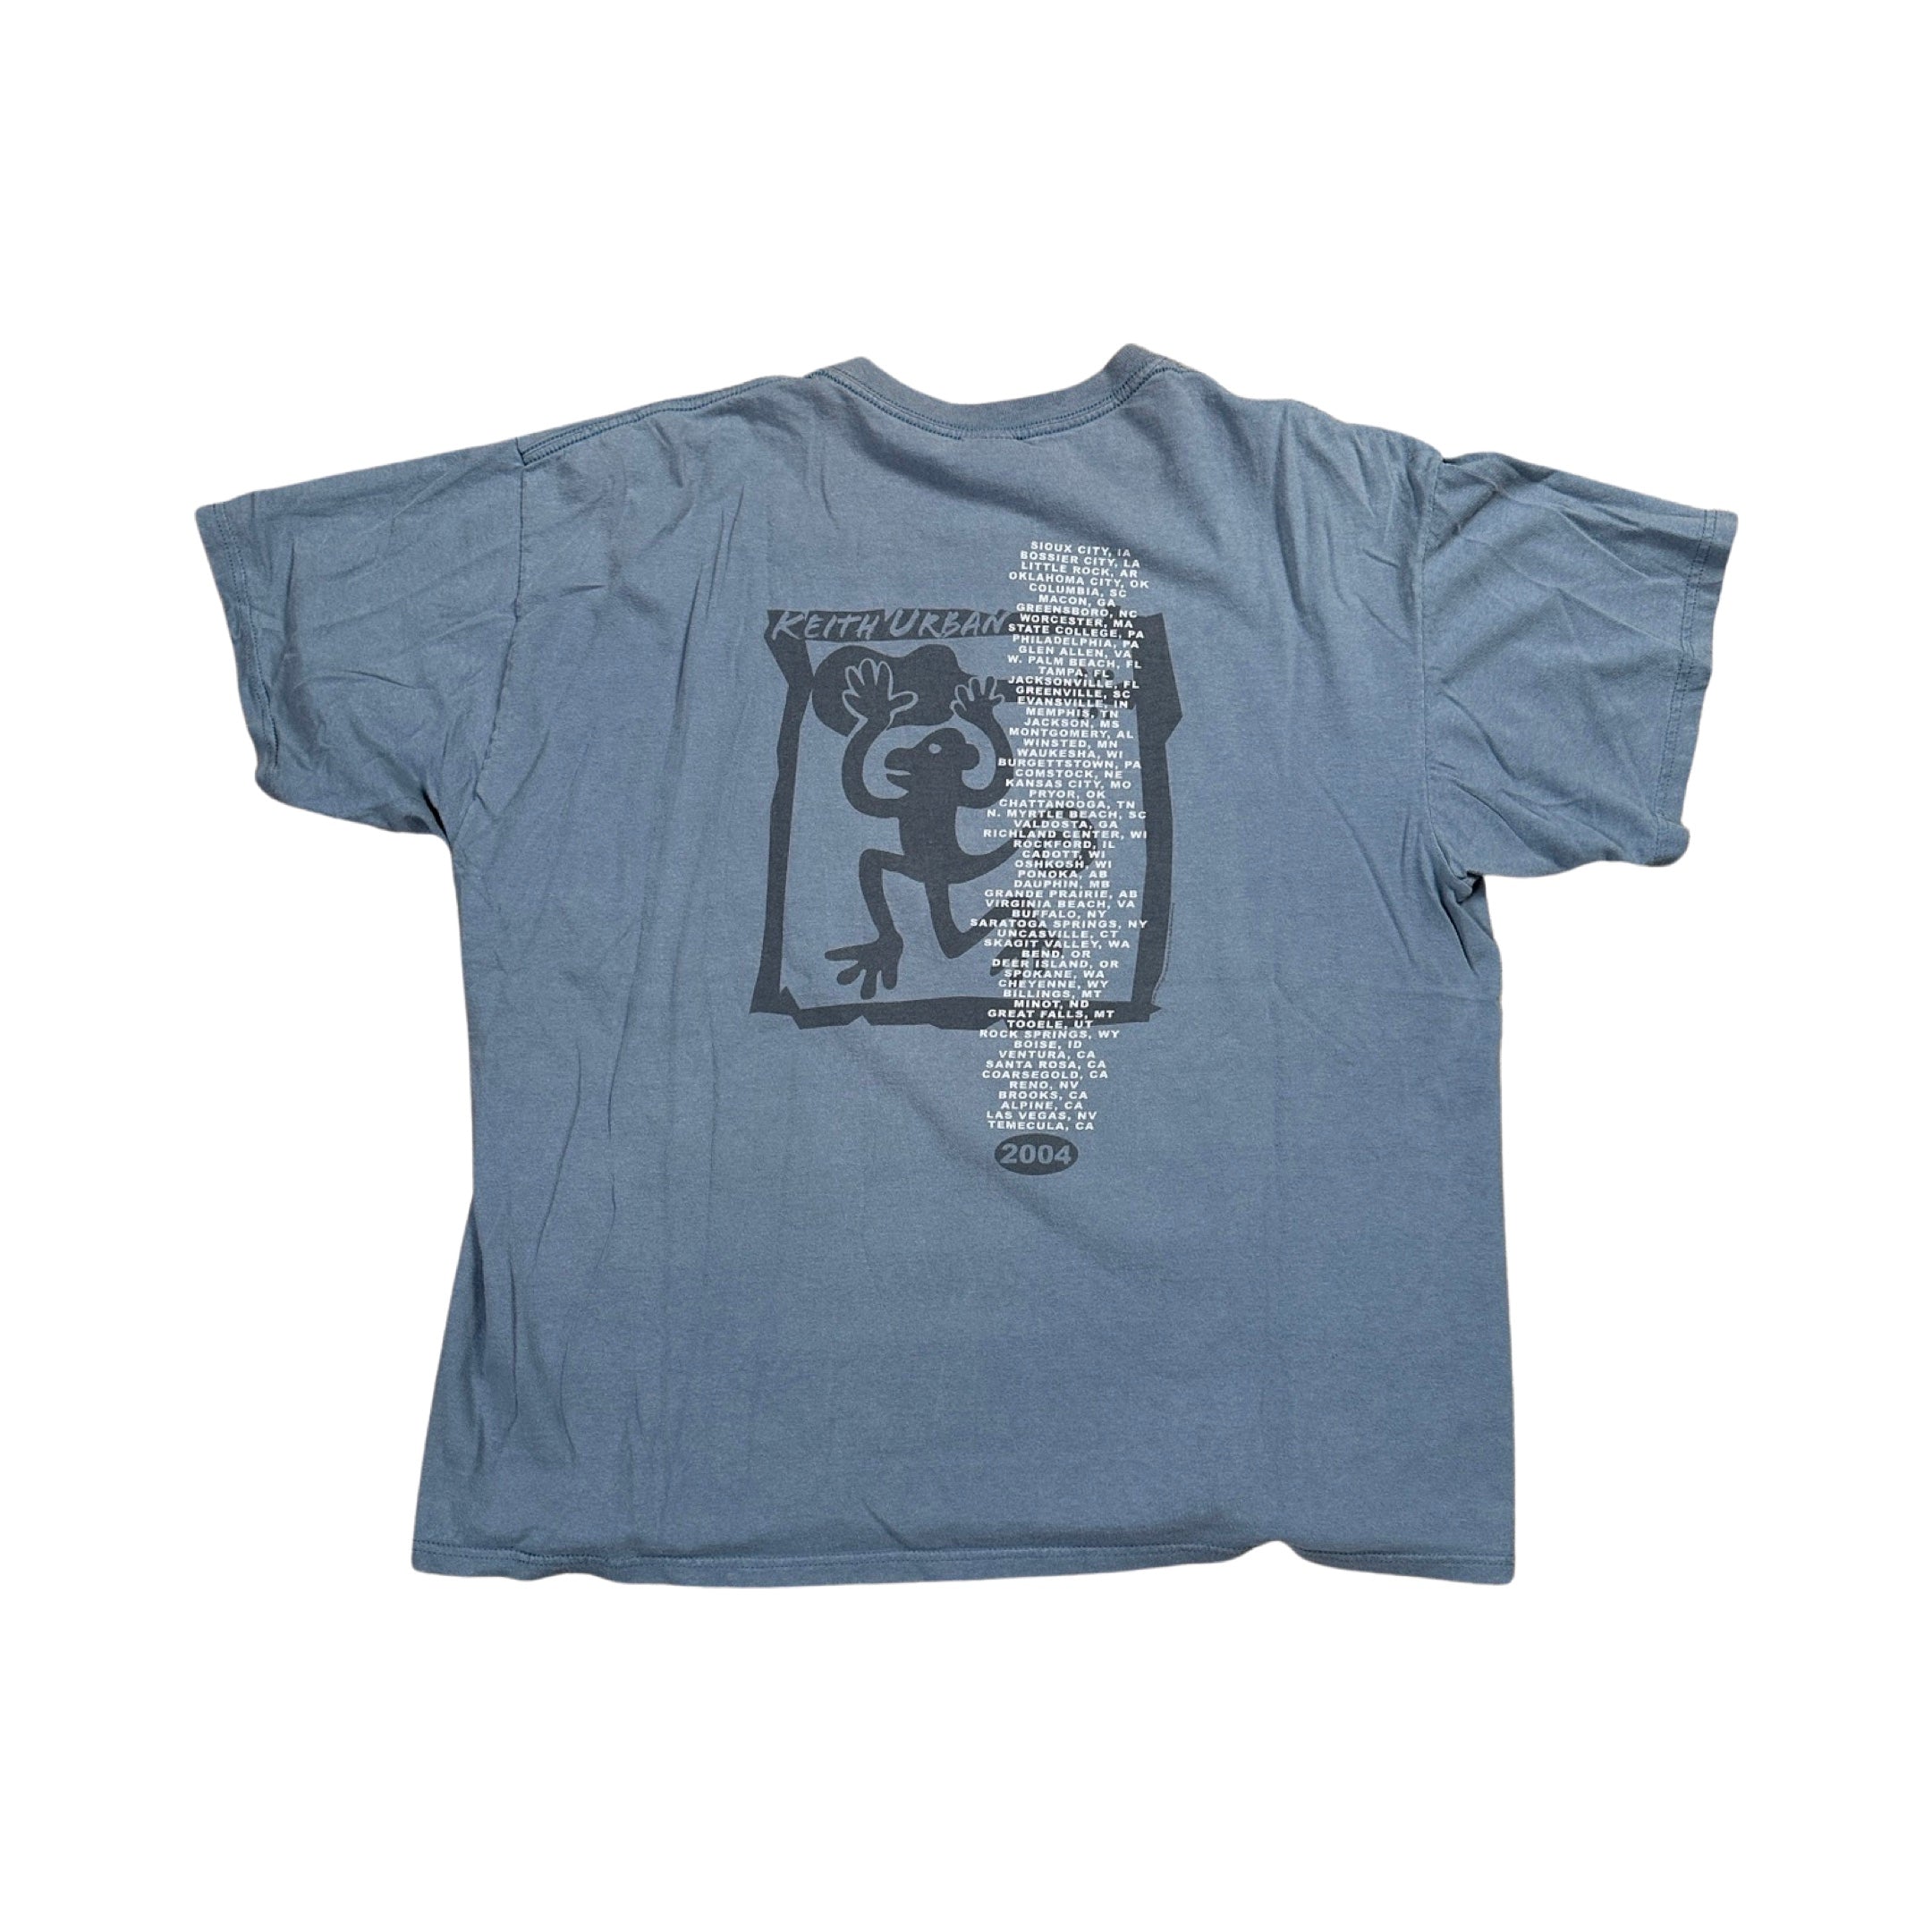 Keith Urban 2004 T-Shirt (XL)